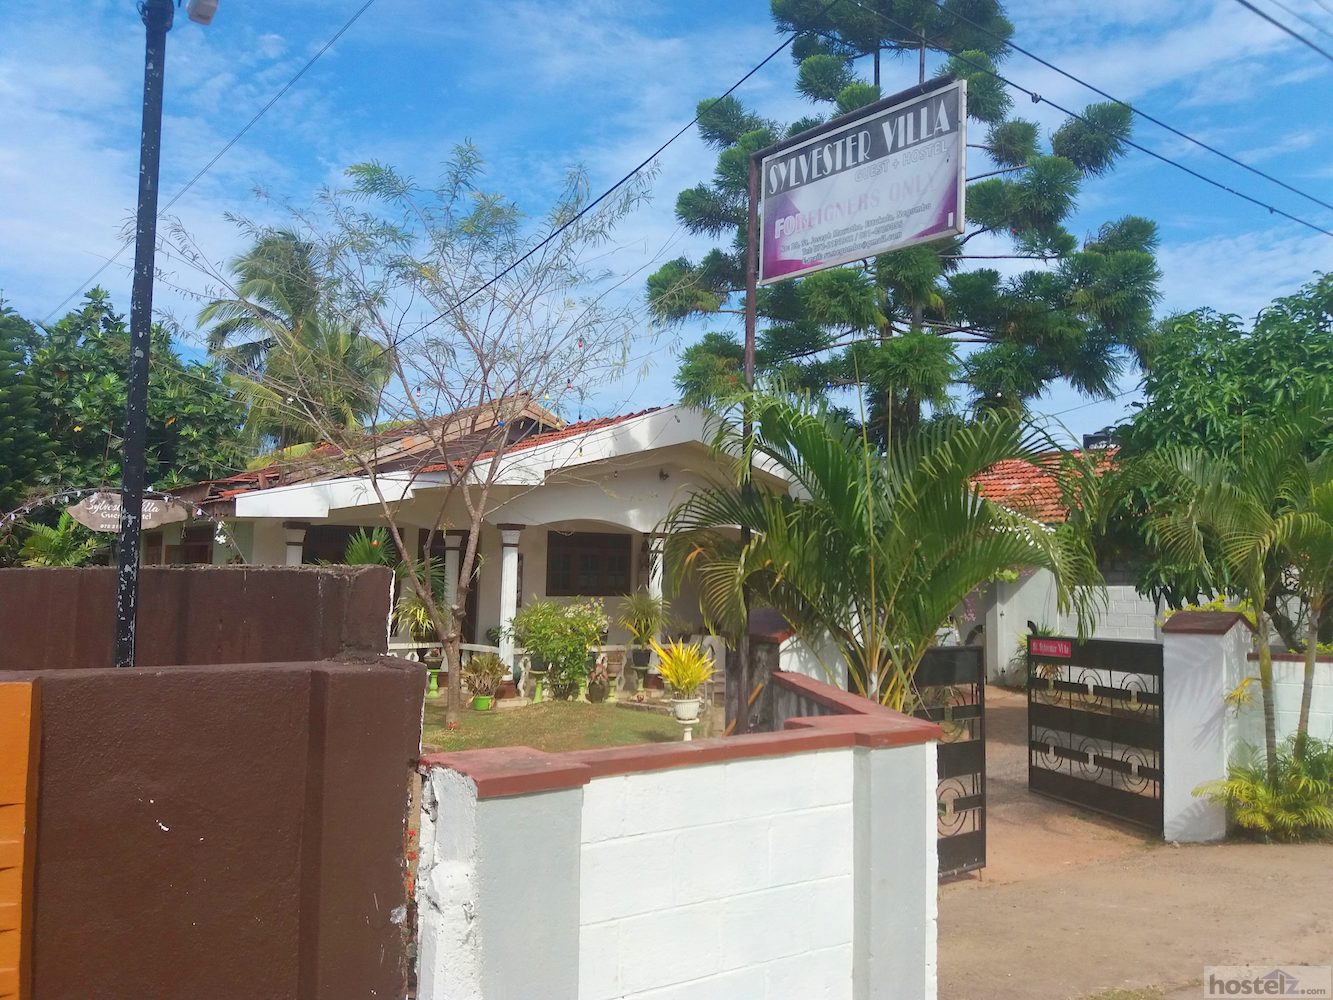 Sylvester Villa Hostel, Negombo